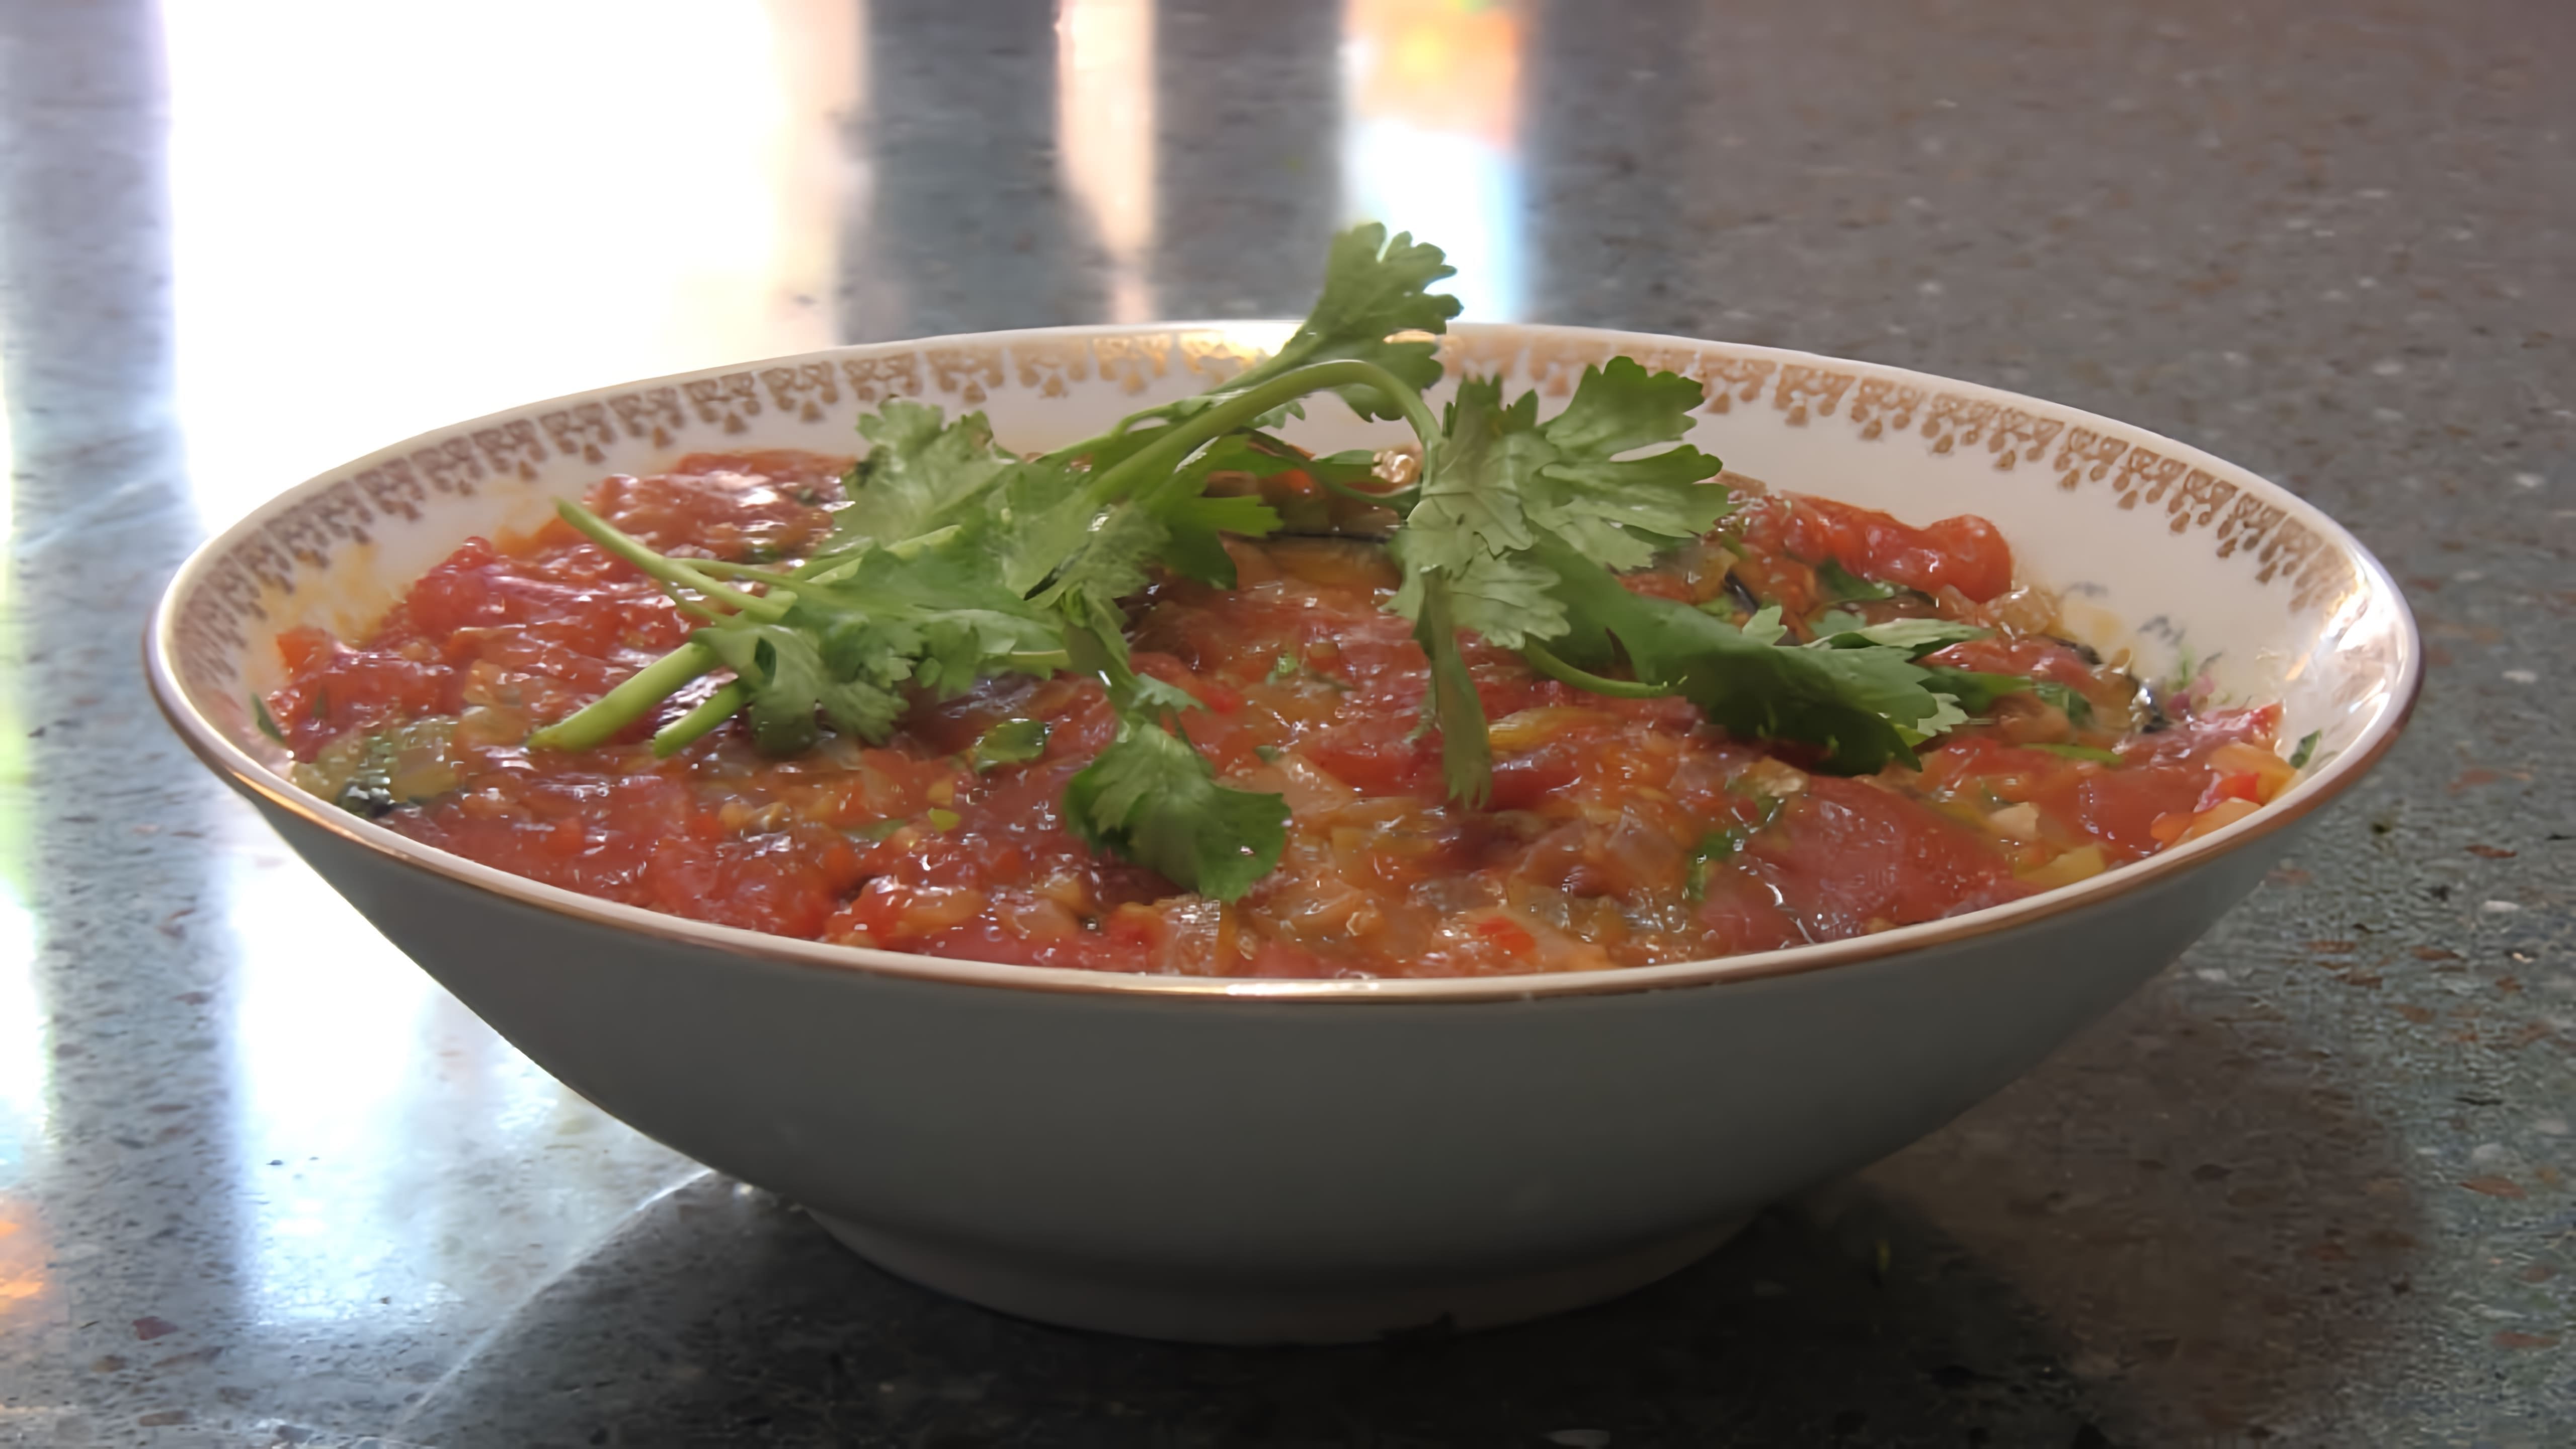 В этом видео демонстрируется рецепт салата из жареных баклажанов "Особый" от Бабушки Эммы